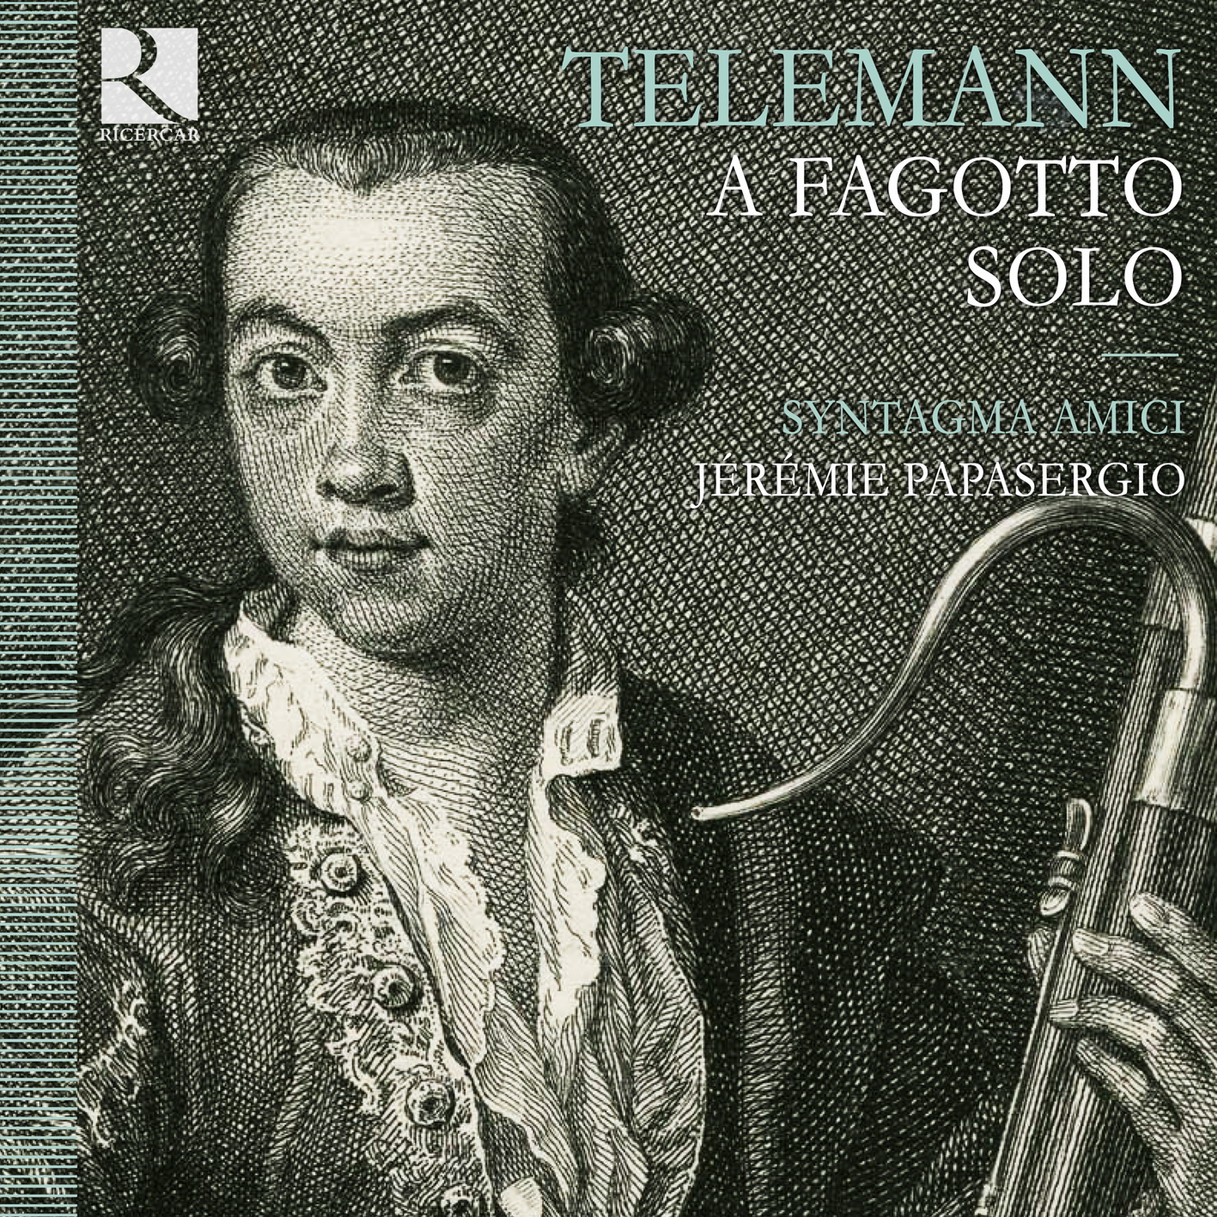 Syntagma Amici, Jeremie Papasergio – Telemann: A fagotto solo (2011) [Qobuz FLAC 24bit/44,1kHz]